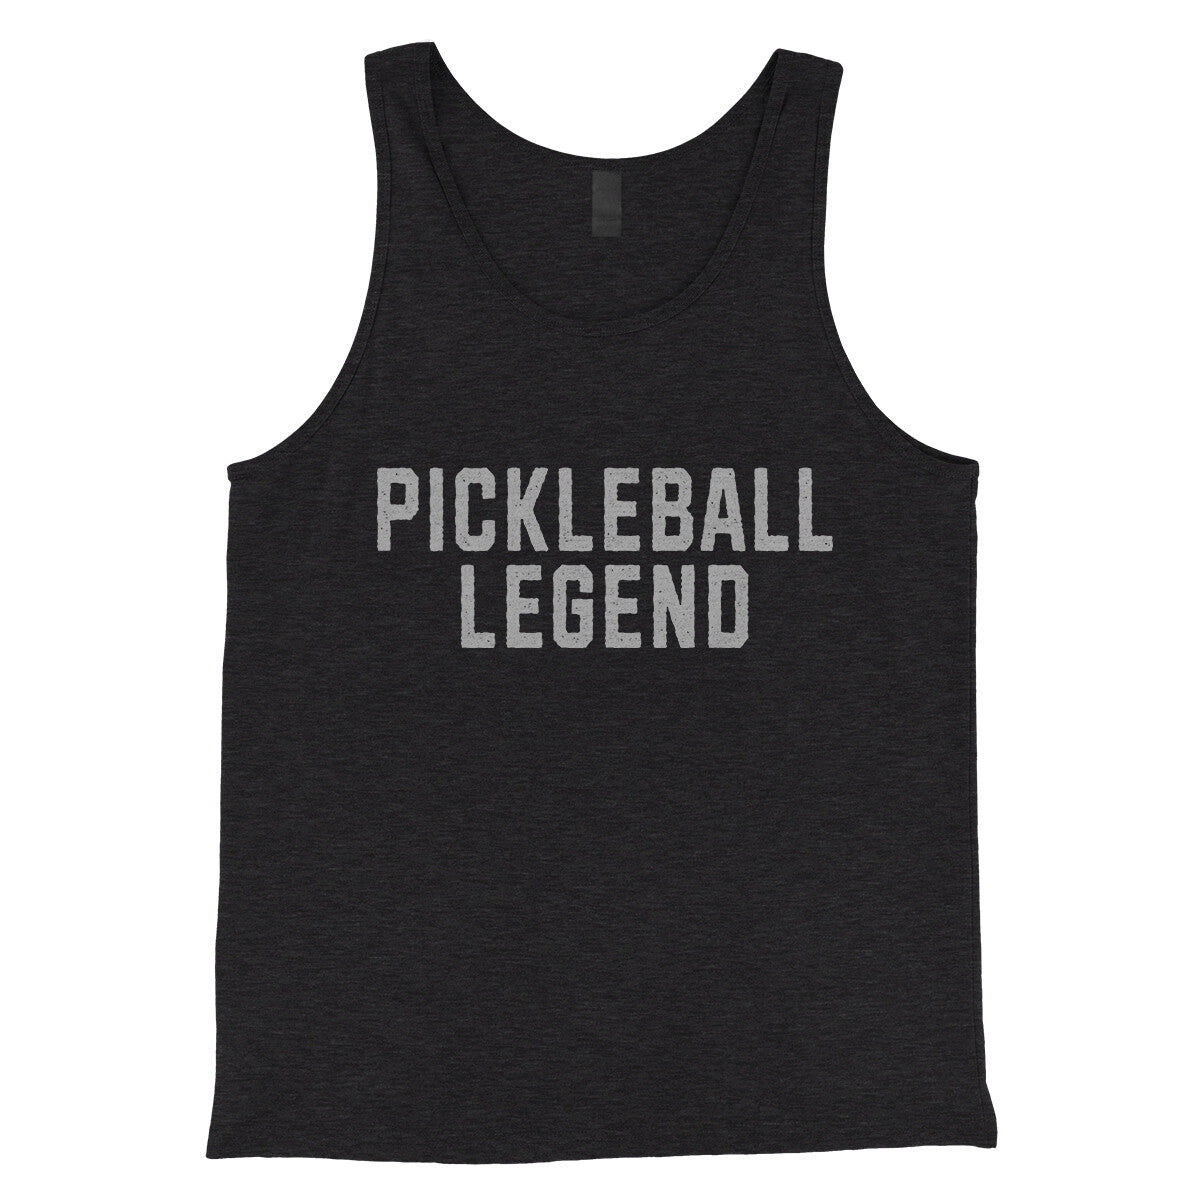 Pickleball Legend in Charcoal Black TriBlend Color